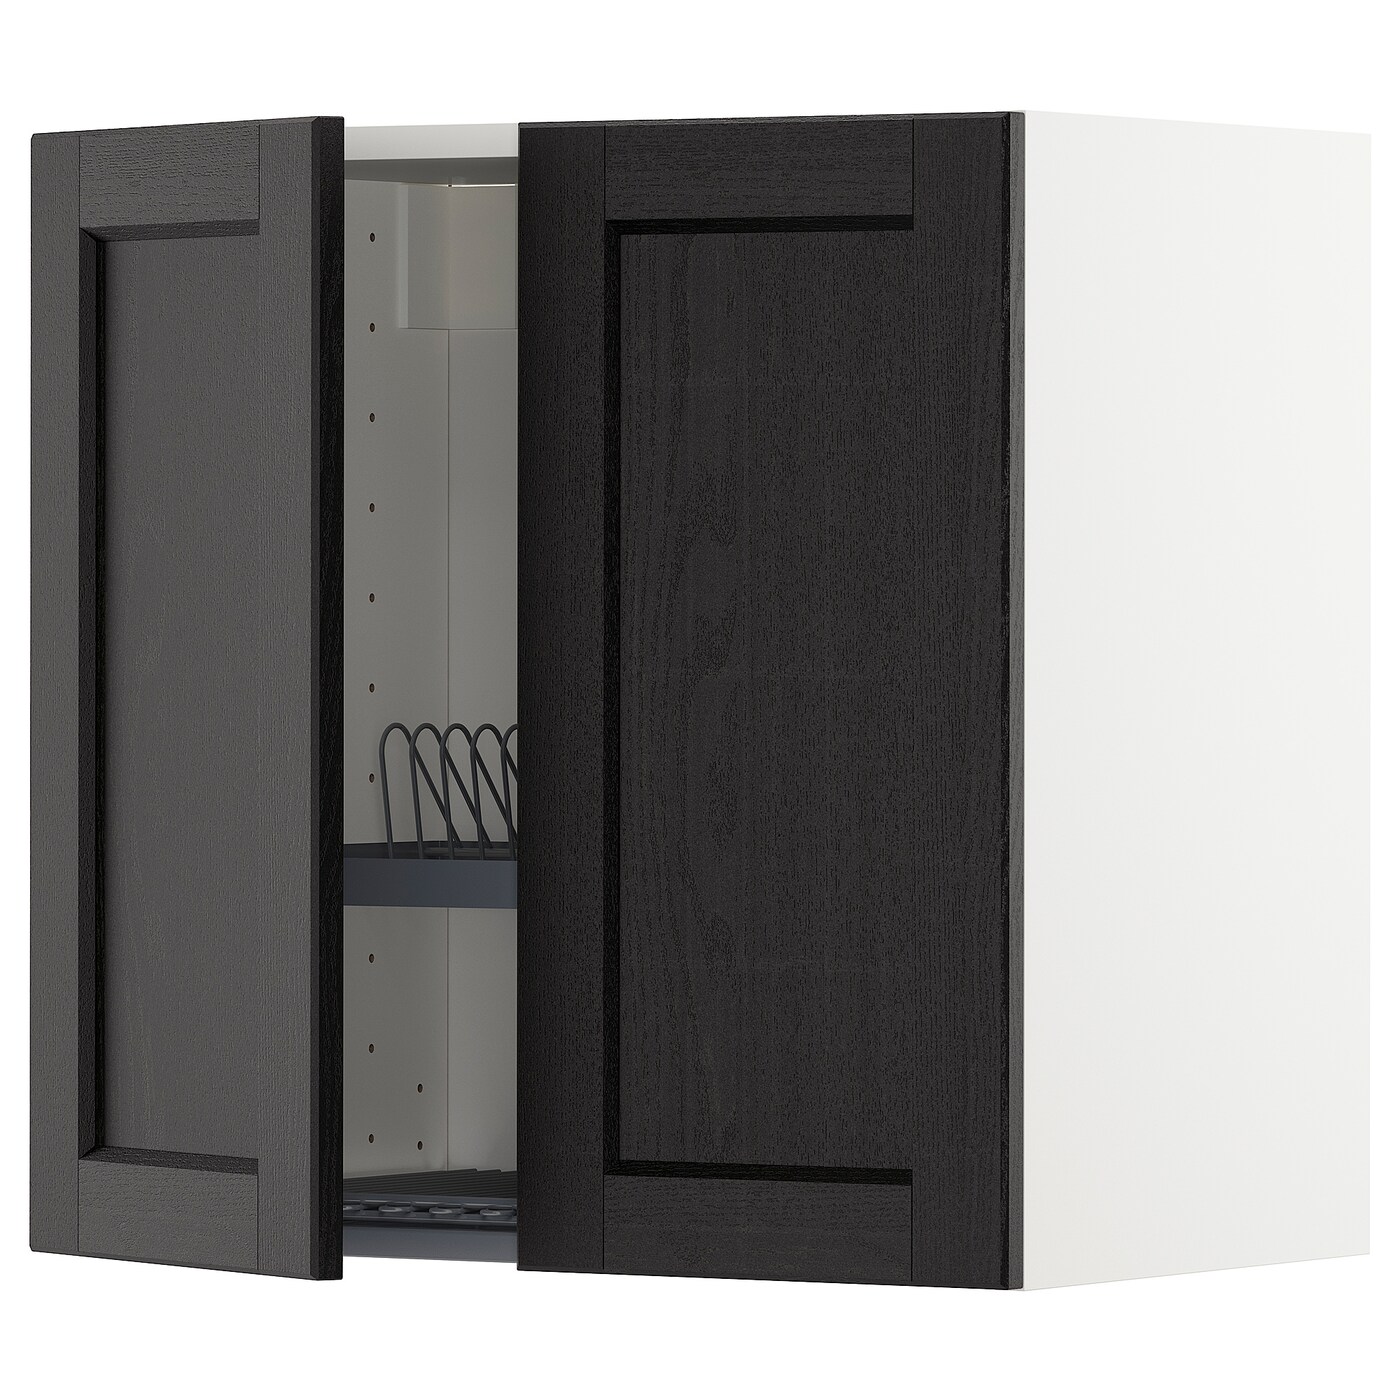 Навесной шкаф с сушилкой - METOD IKEA/ МЕТОД ИКЕА, 60х60 см, белый/черный